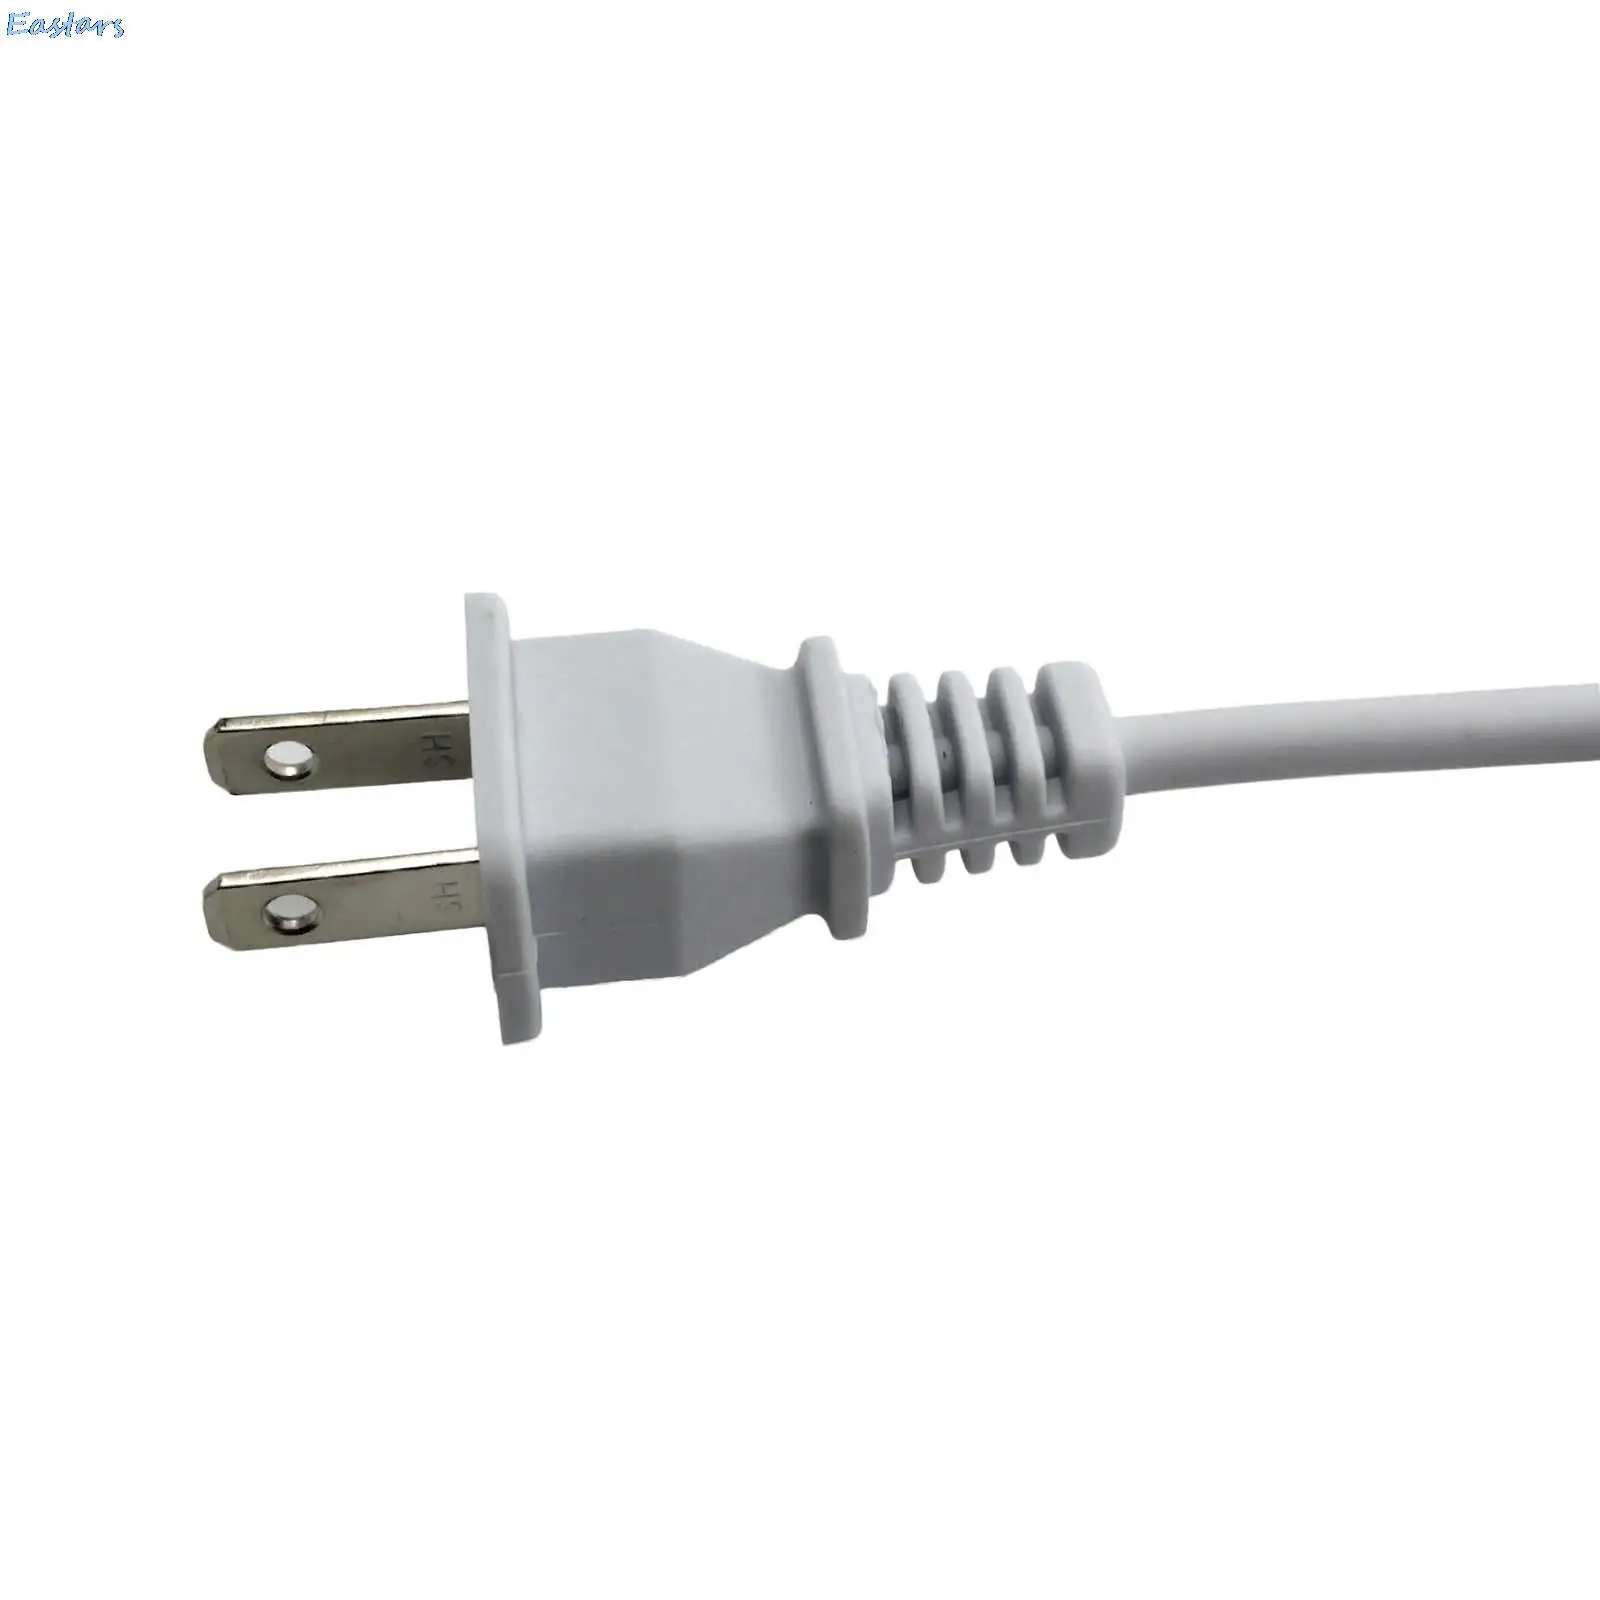 EU/US/UK Plug Универсальный Мульти-порт Smart USB Зарядное устройство стены Мощность адаптер ЖК-дисплей Экран дисплея Зарядное устройство для мобильного телефона Tablet